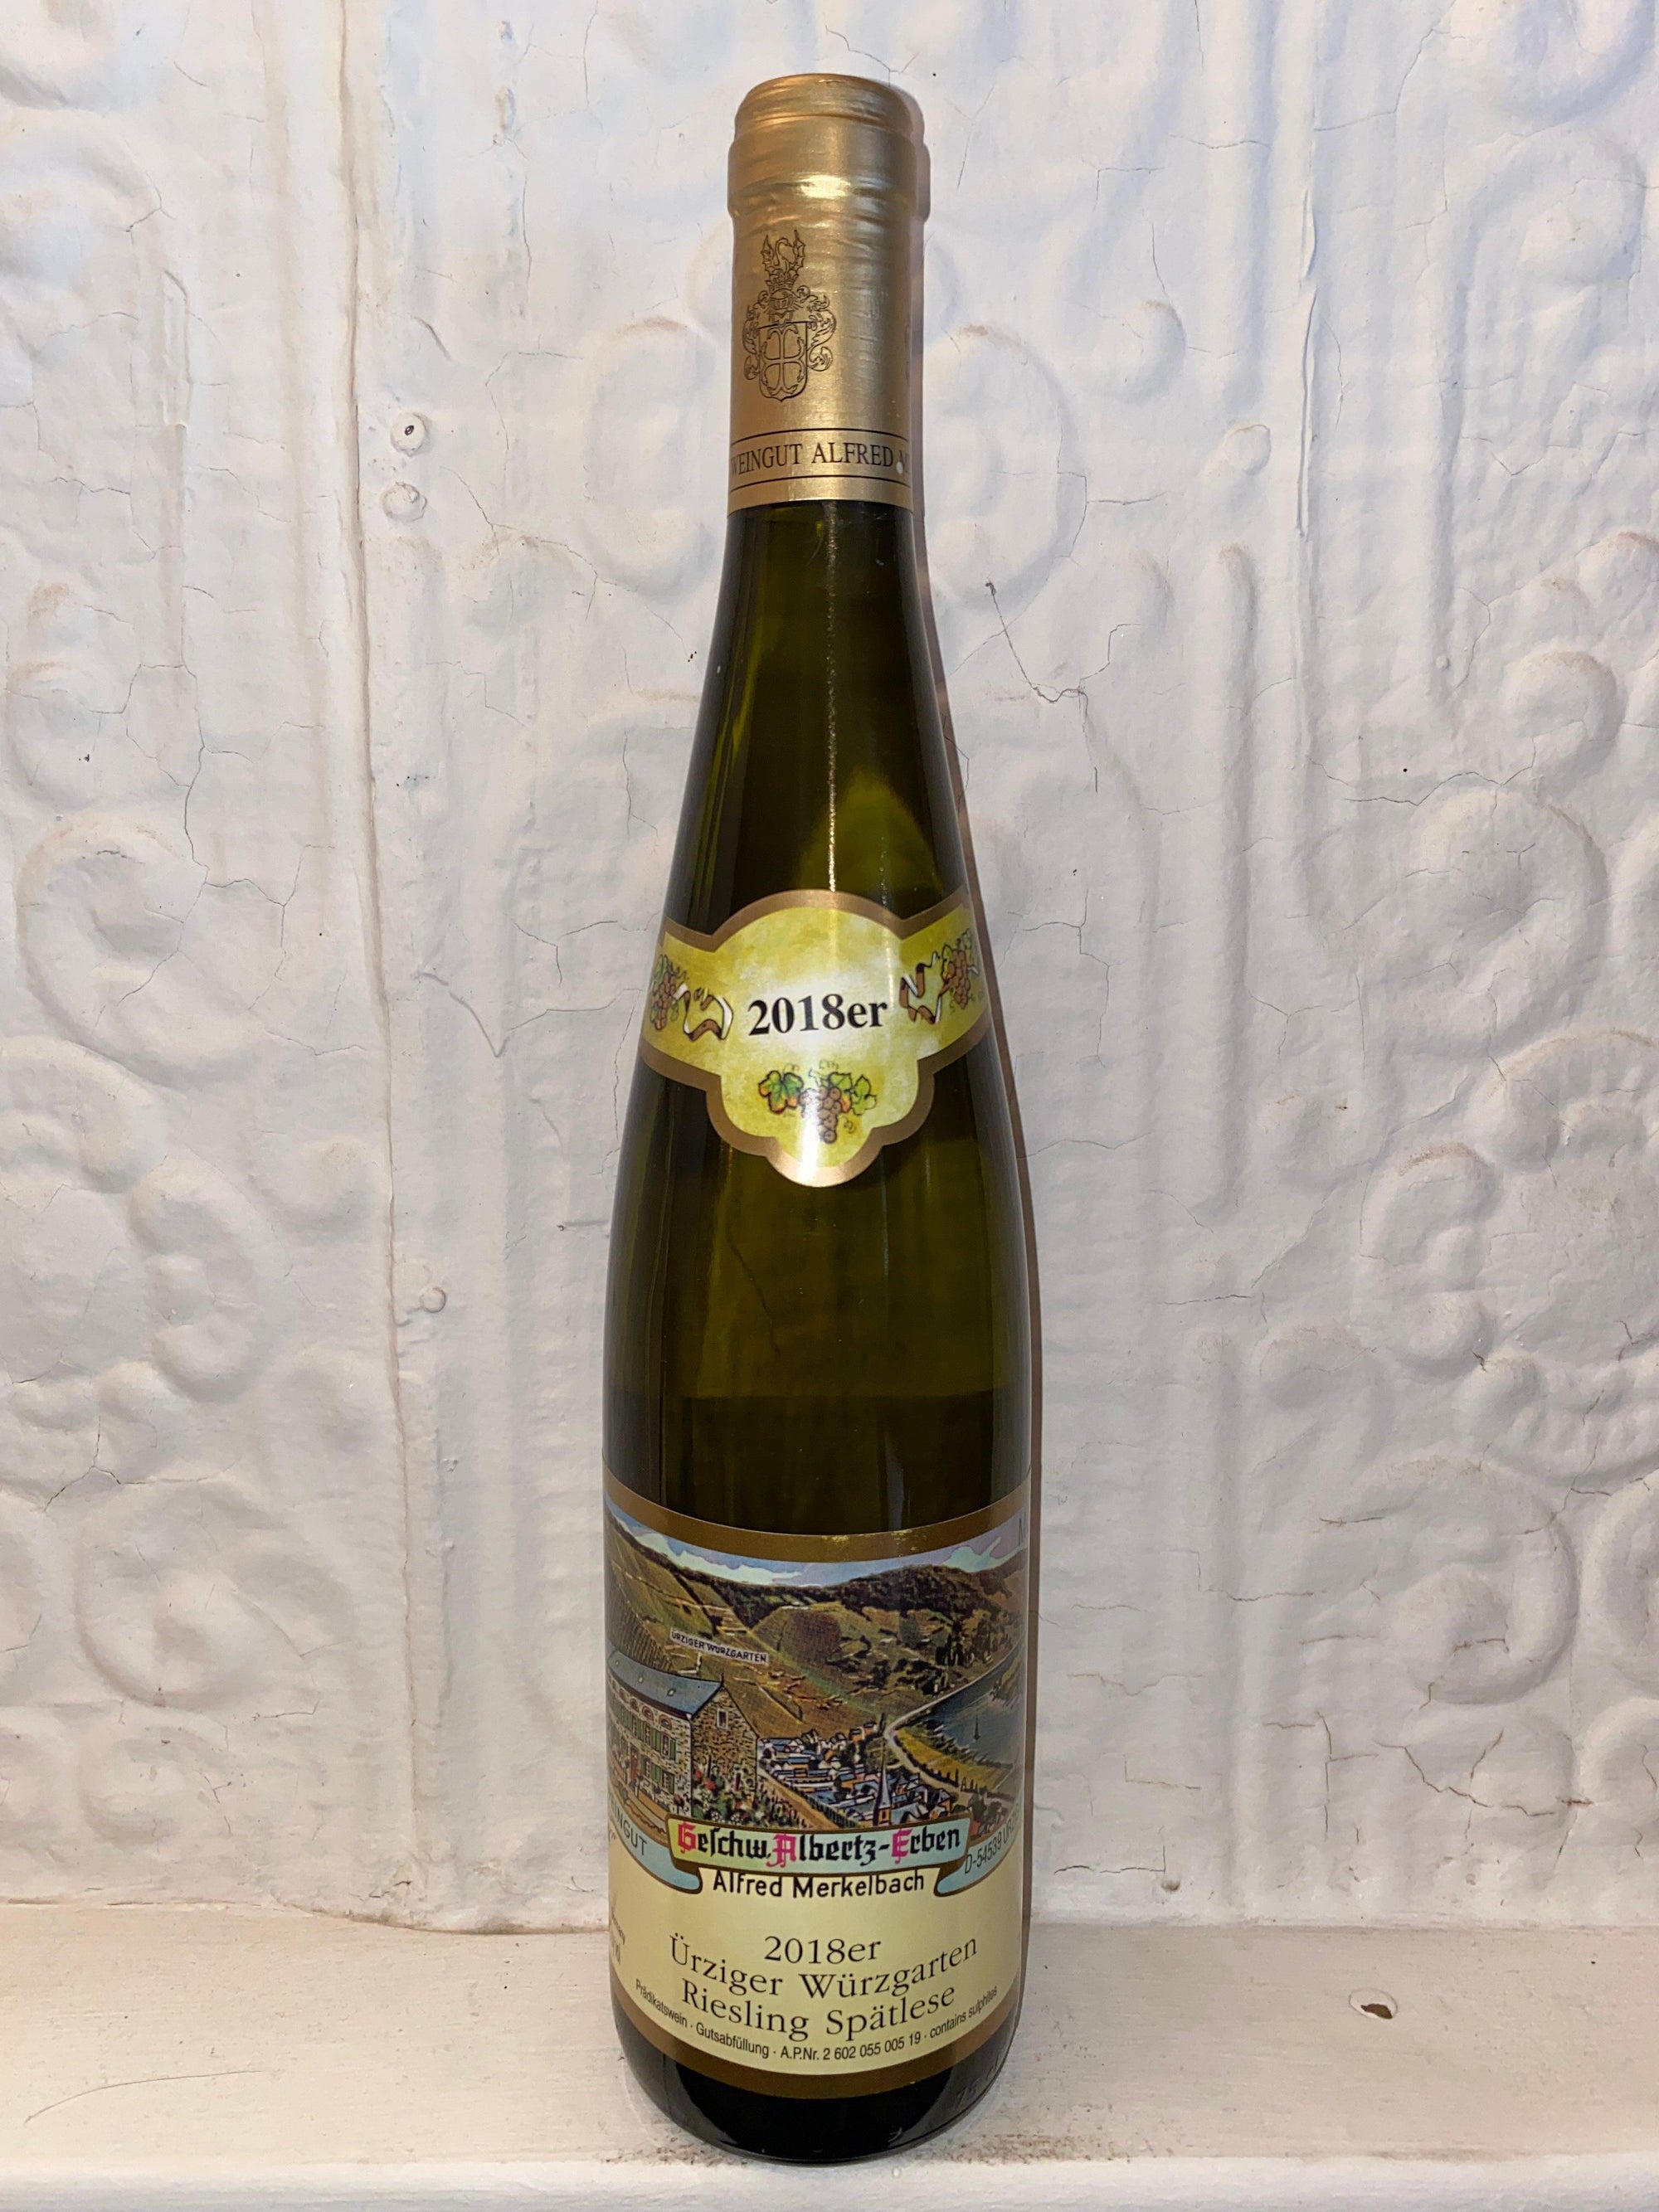 Urziger Wurzgarten Riesling Spatlese, Merkelbach 2018 (Mosel, Germany)-Wine-Bibber & Bell